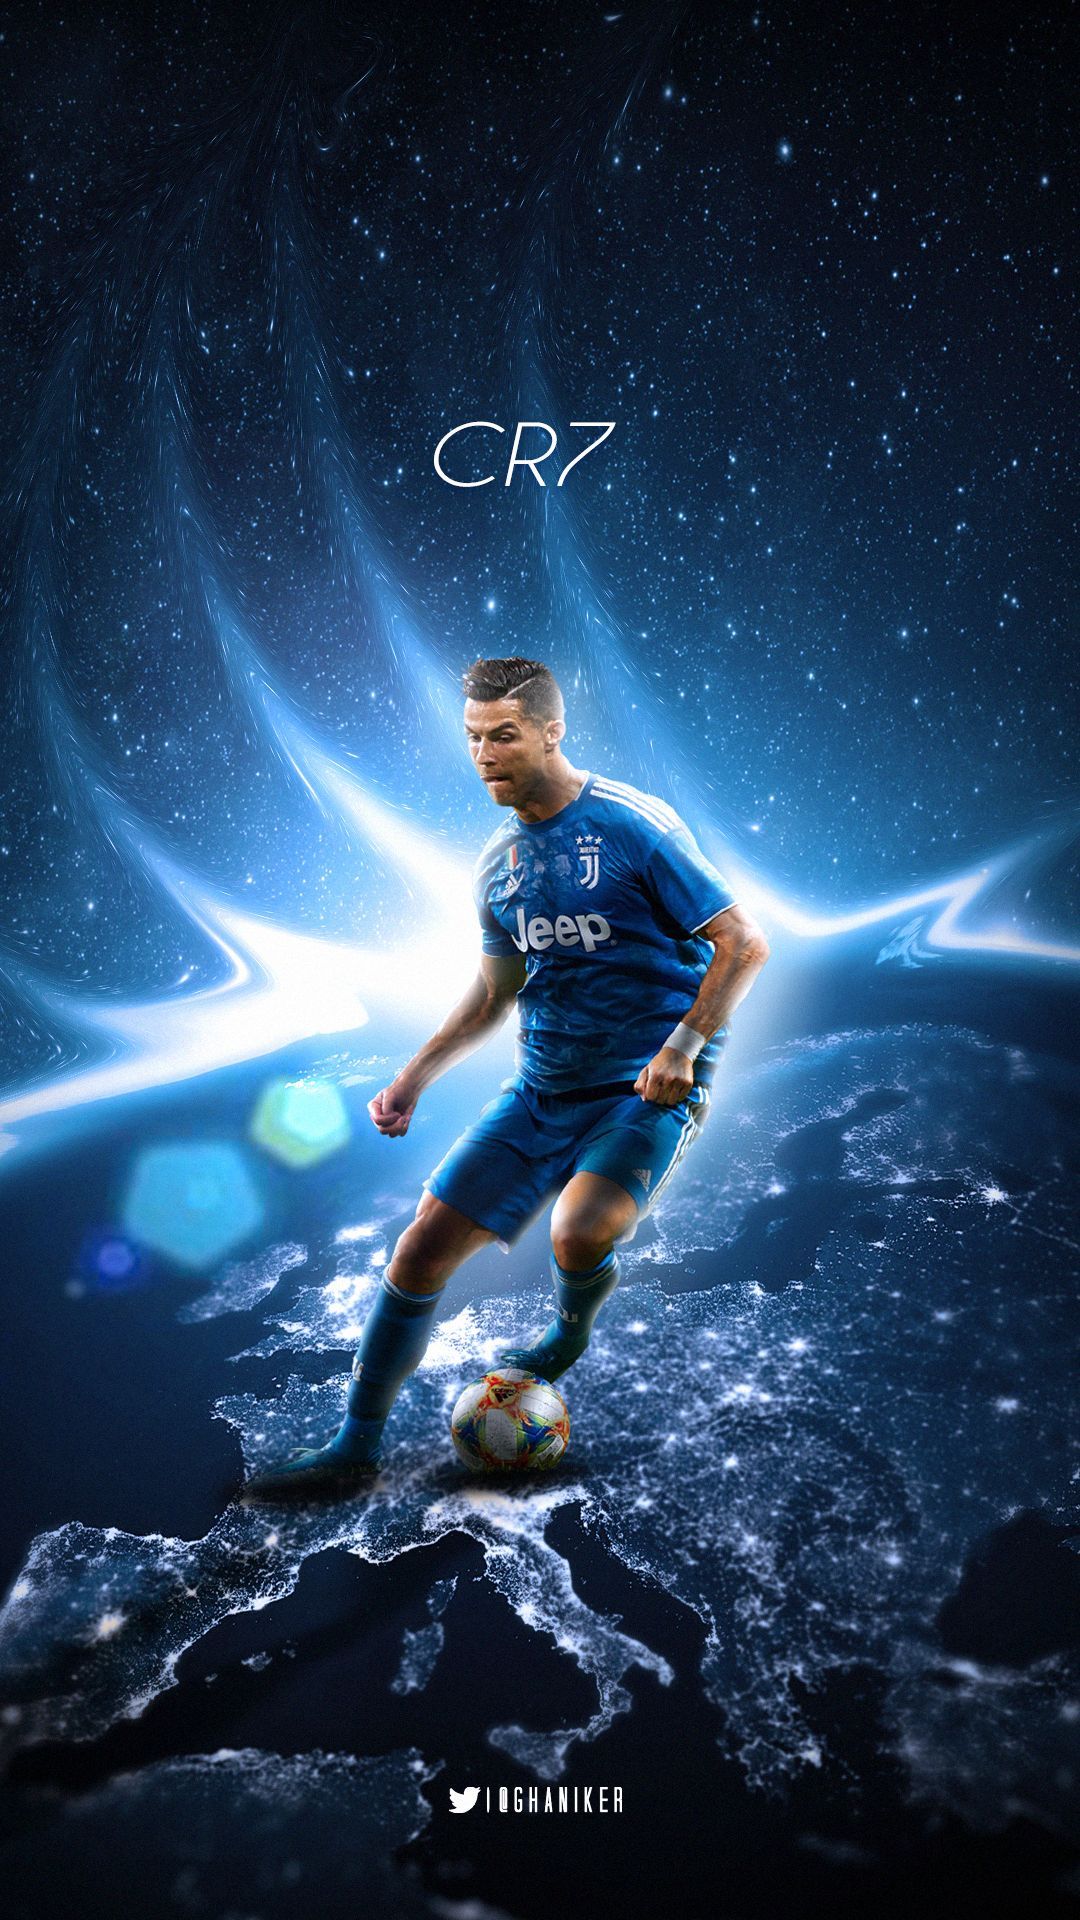  Cristiano Ronaldo Hintergrundbild 1080x1920. Mobile wallpaper: Sports, Cristiano Ronaldo, Soccer, Juventus F C, 1160222 download the picture for free